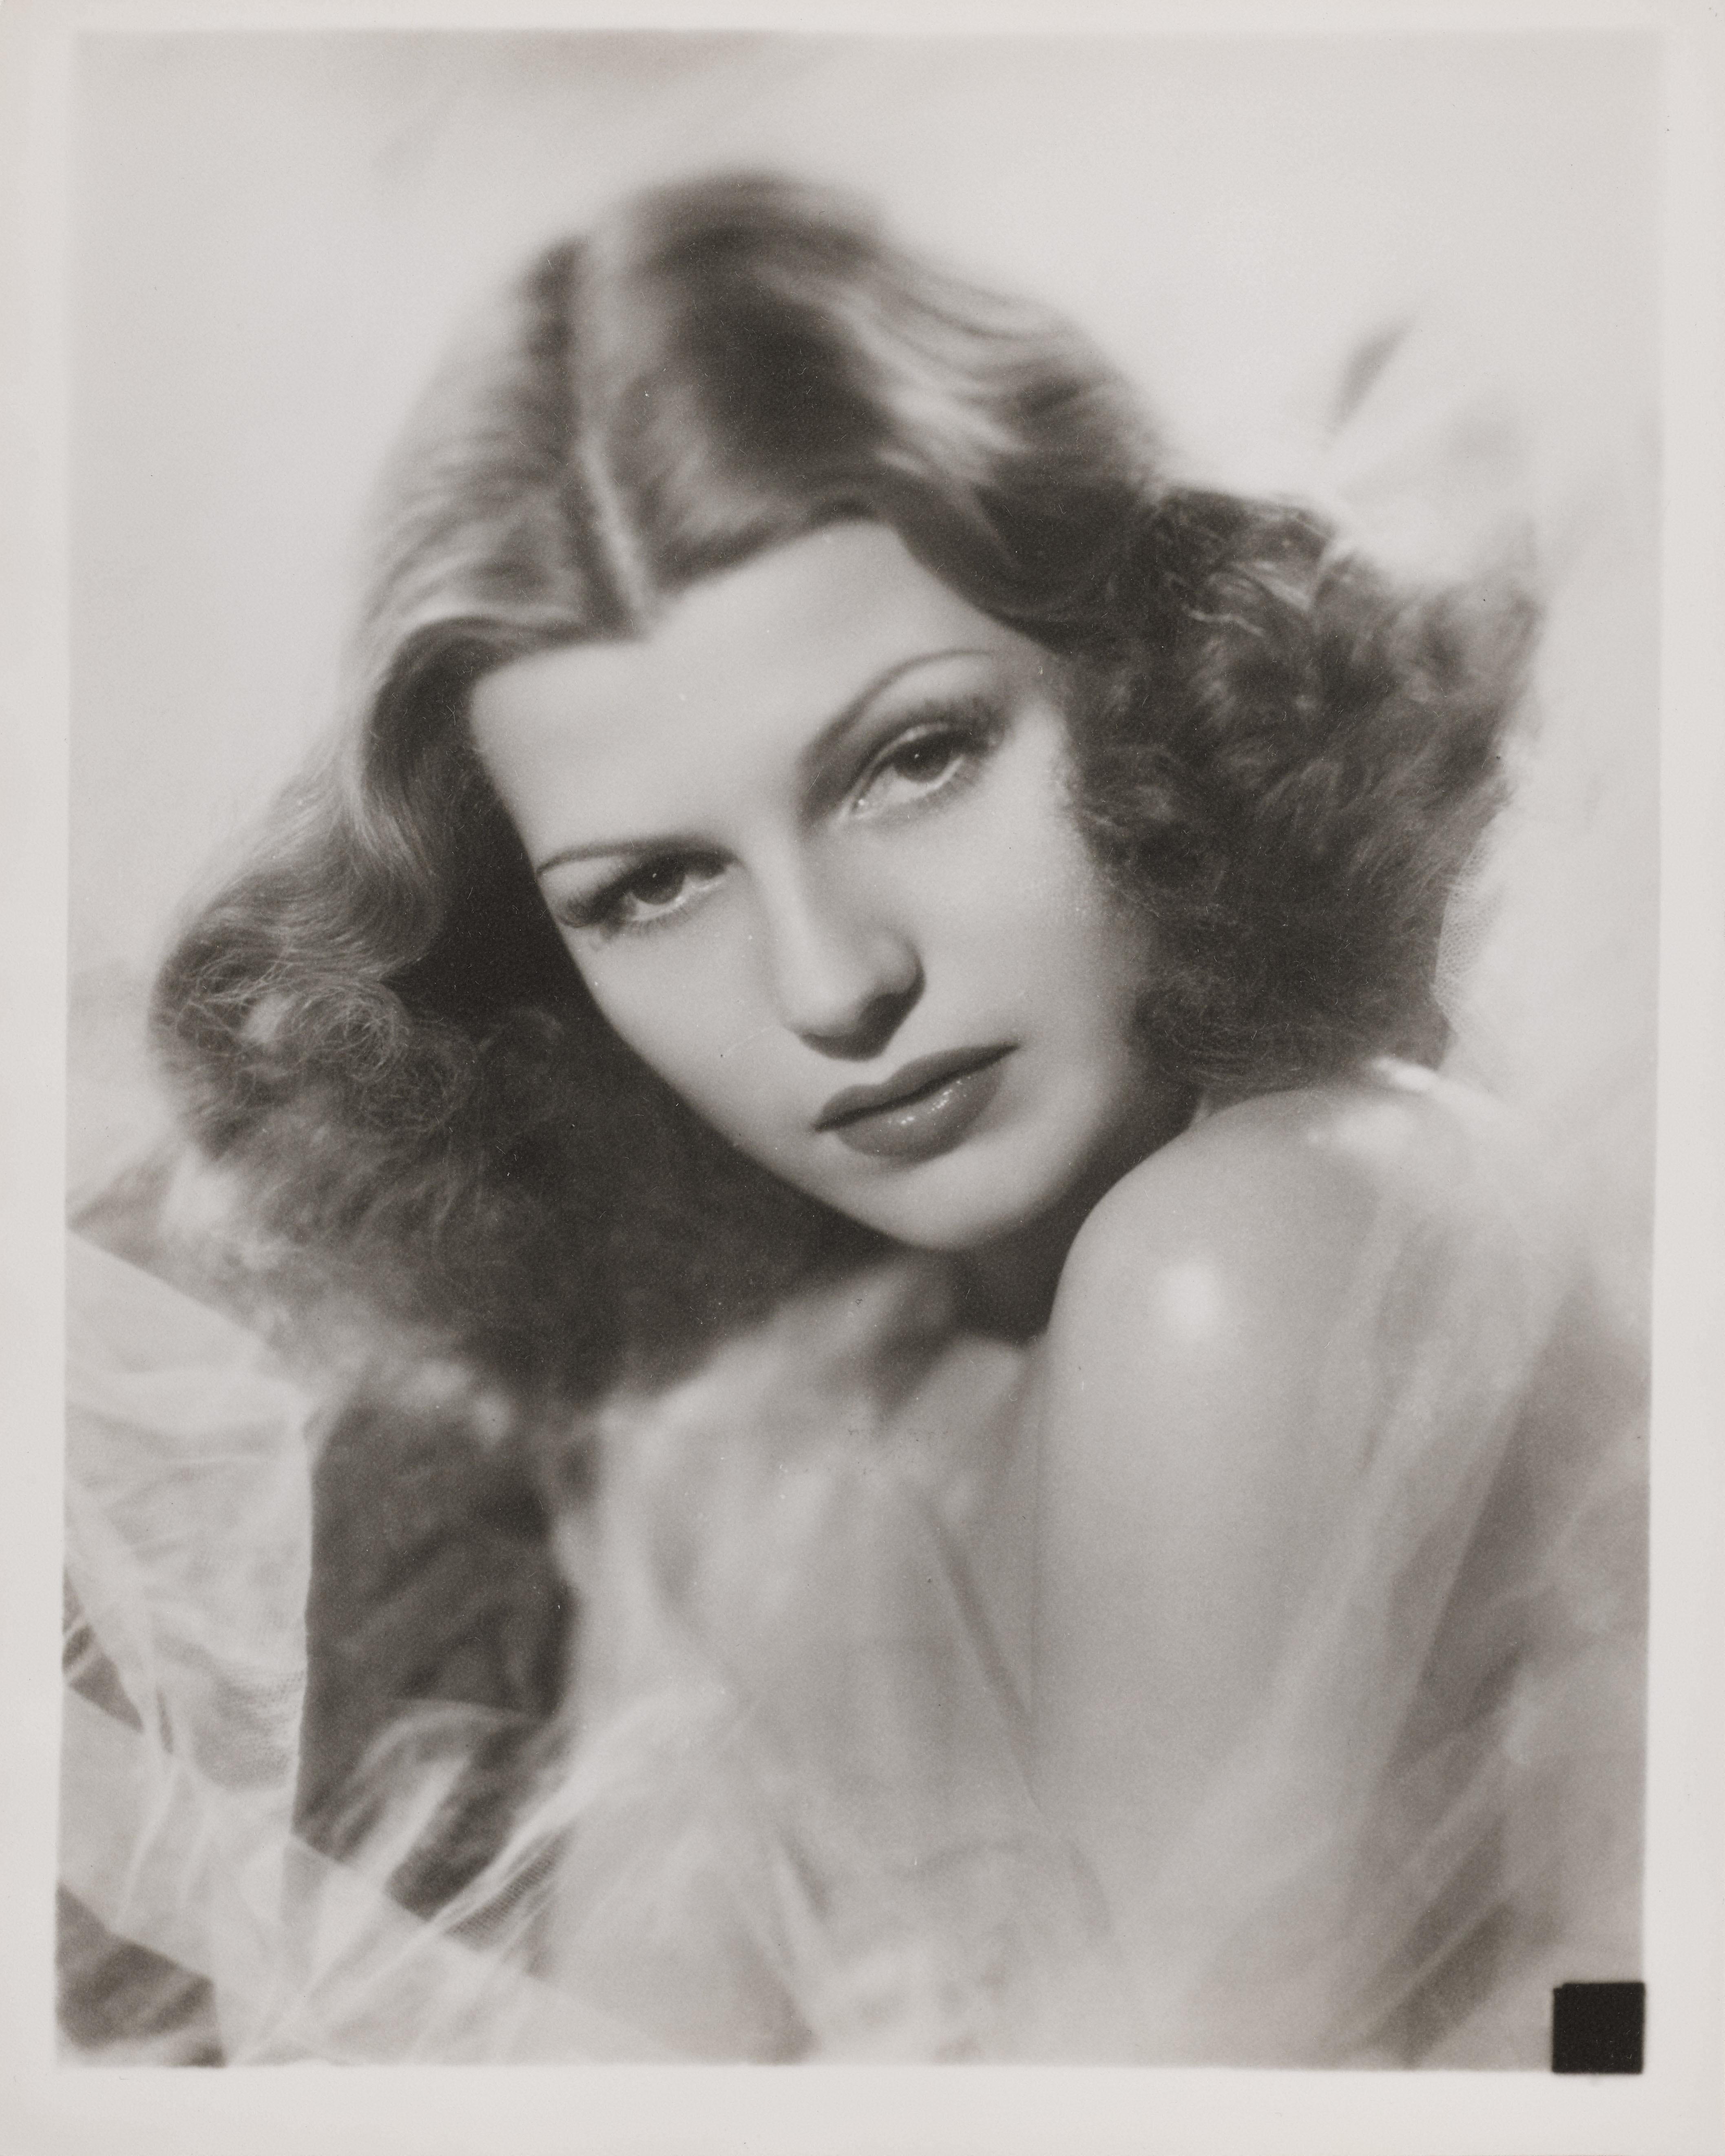 Original Rita Hayworth Porträtfoto. Es handelt sich um eine Silbergelatine-Fotografie aus den 1940er Jahren mit doppeltem Gewicht und Satin. Dieses Stück wird flach in einem stabilen Karton verschickt.